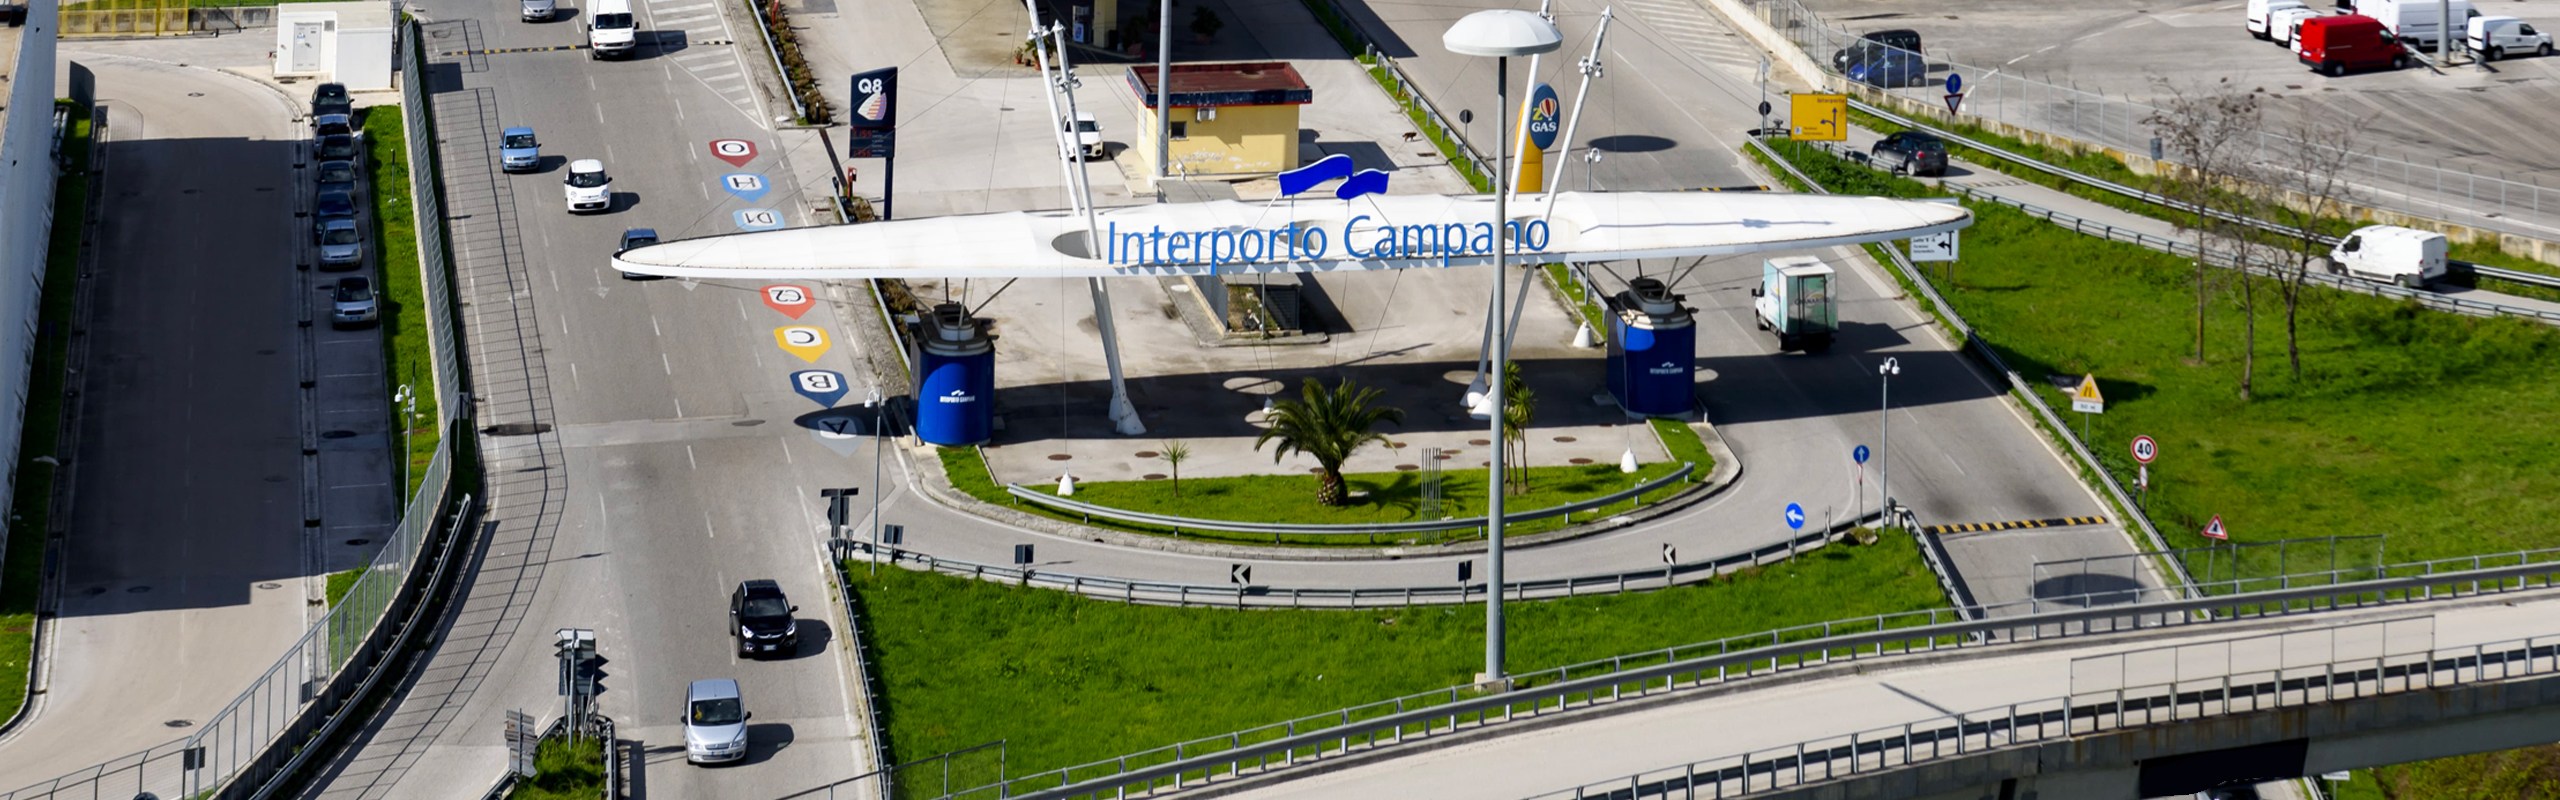 Alfredo Gaetani nuovo presidente Interporto Campano, veduta dell'ingresso dell'Iinterporto